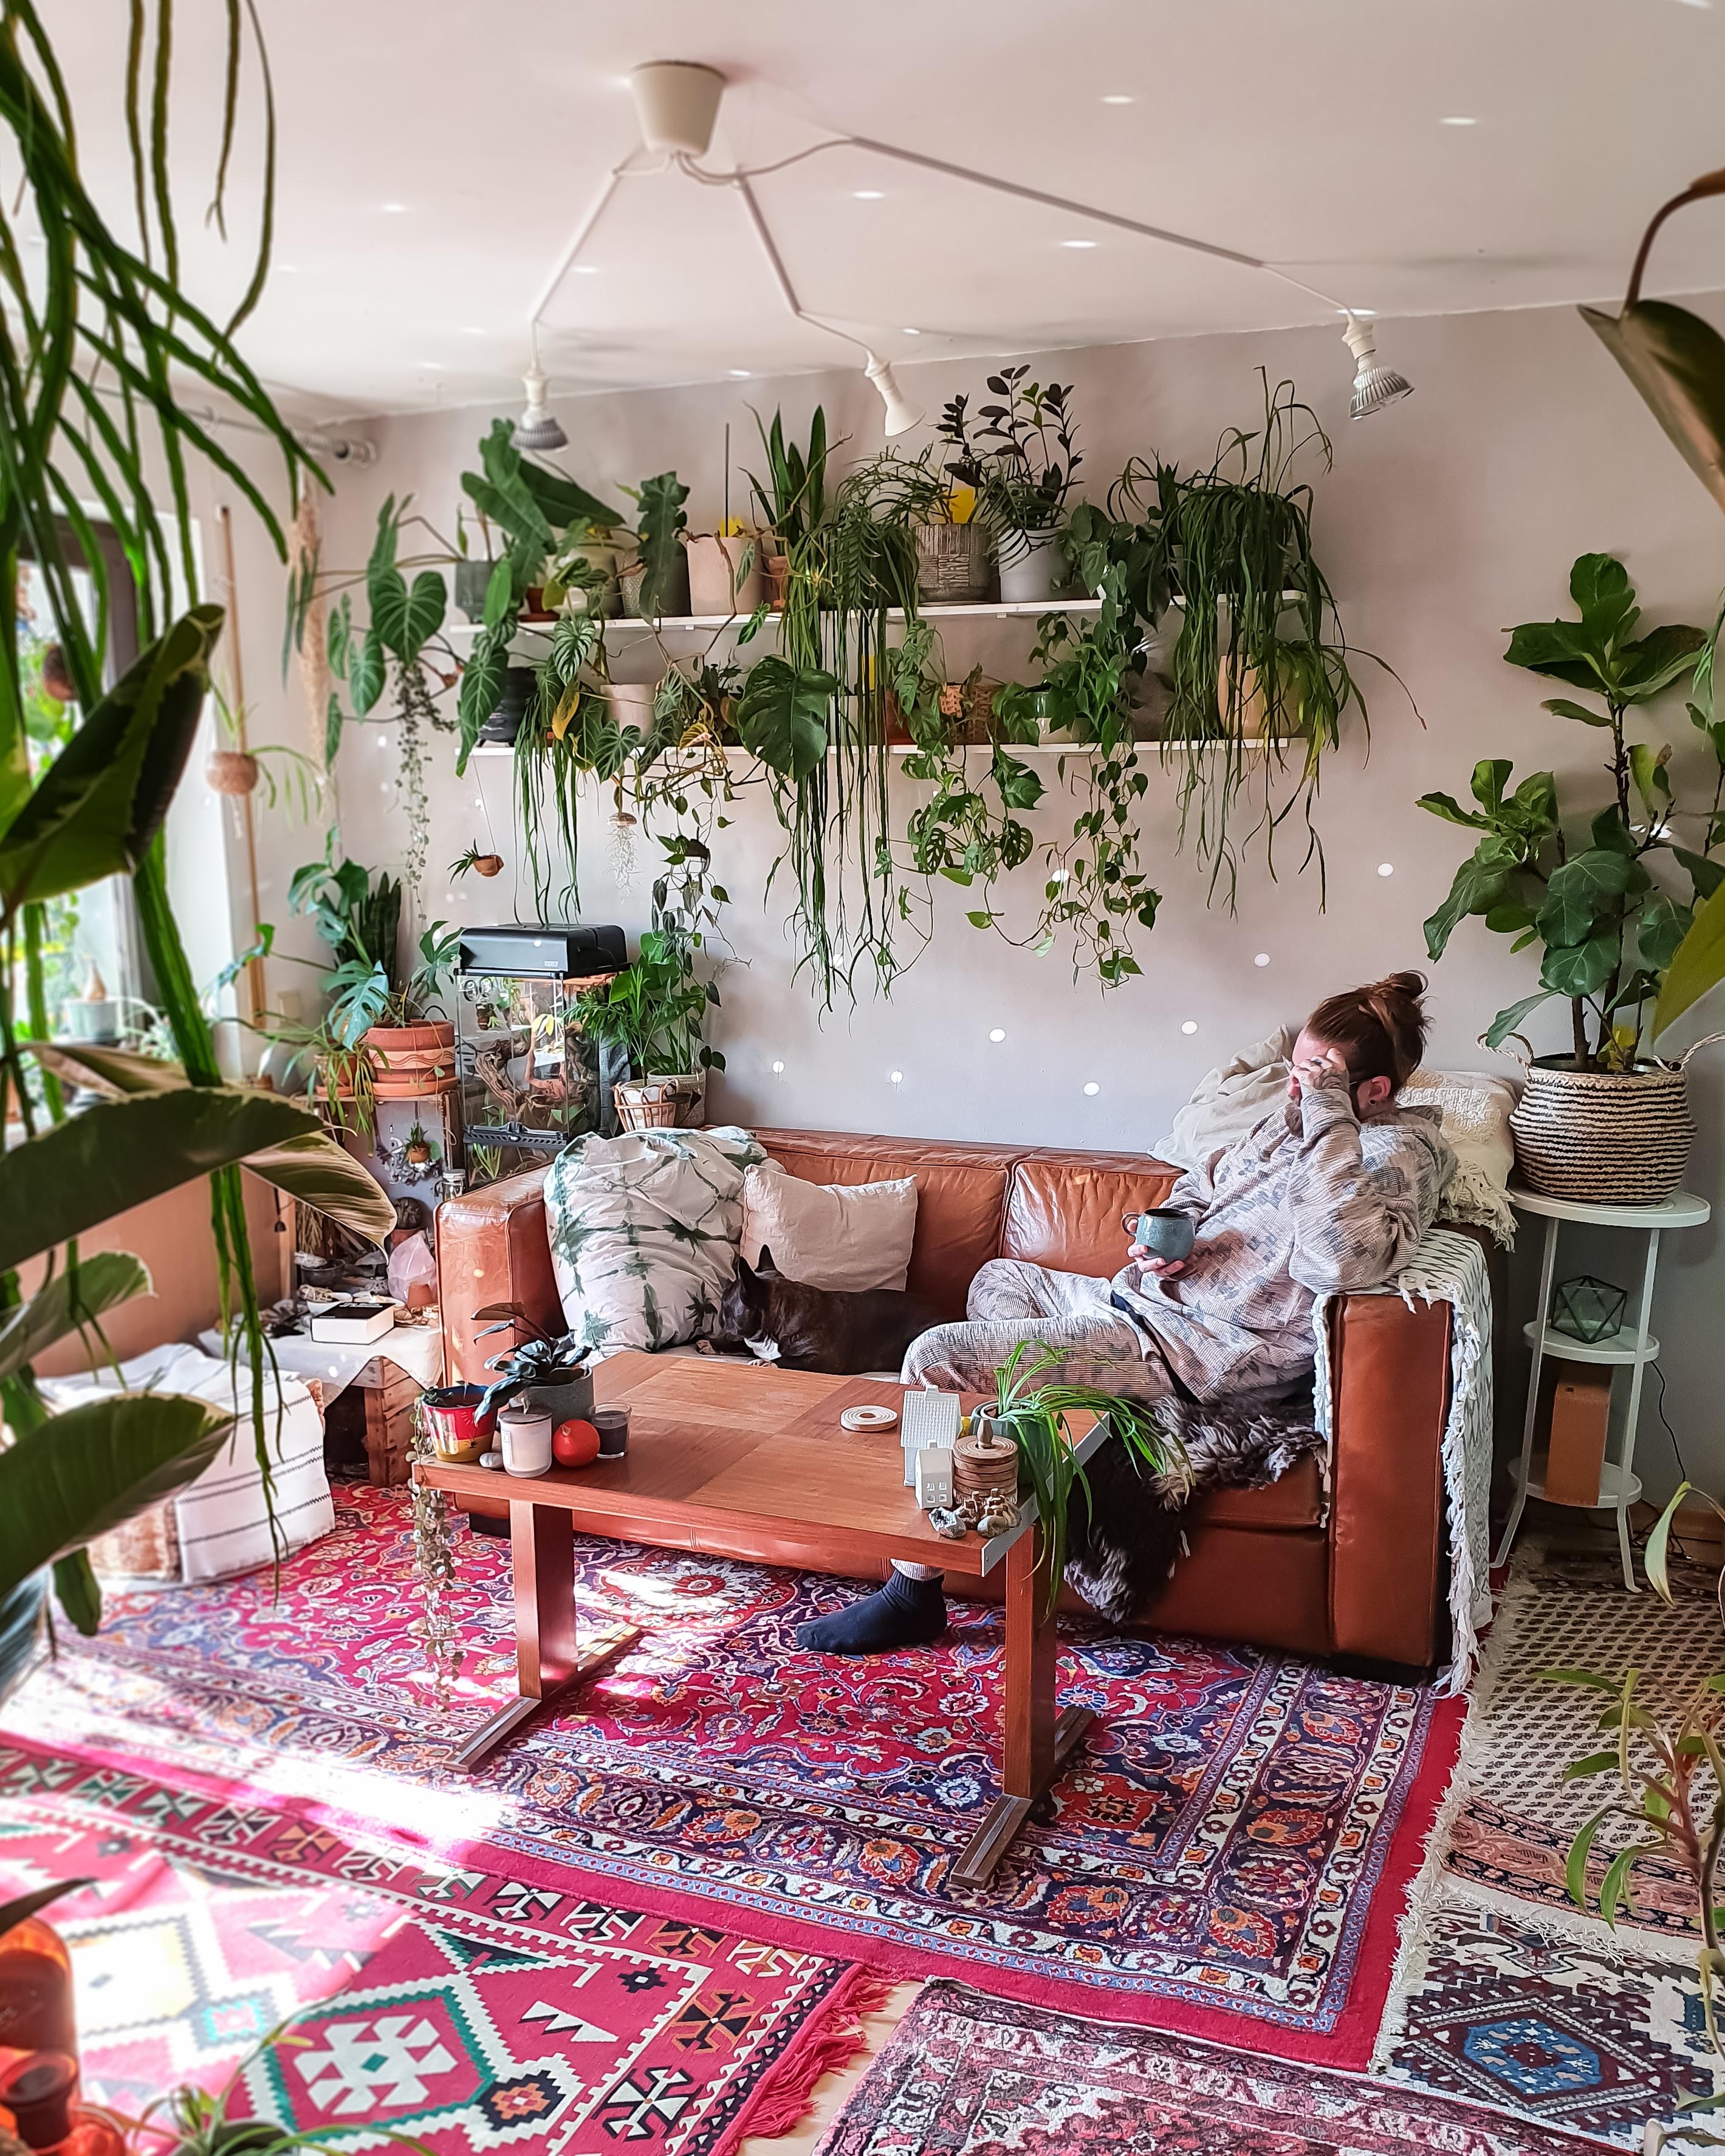 Endlich Urlaub #Wohnzimmer #Regal #Pflanzen #Couch #couchstyle #Sofa #Teppich 